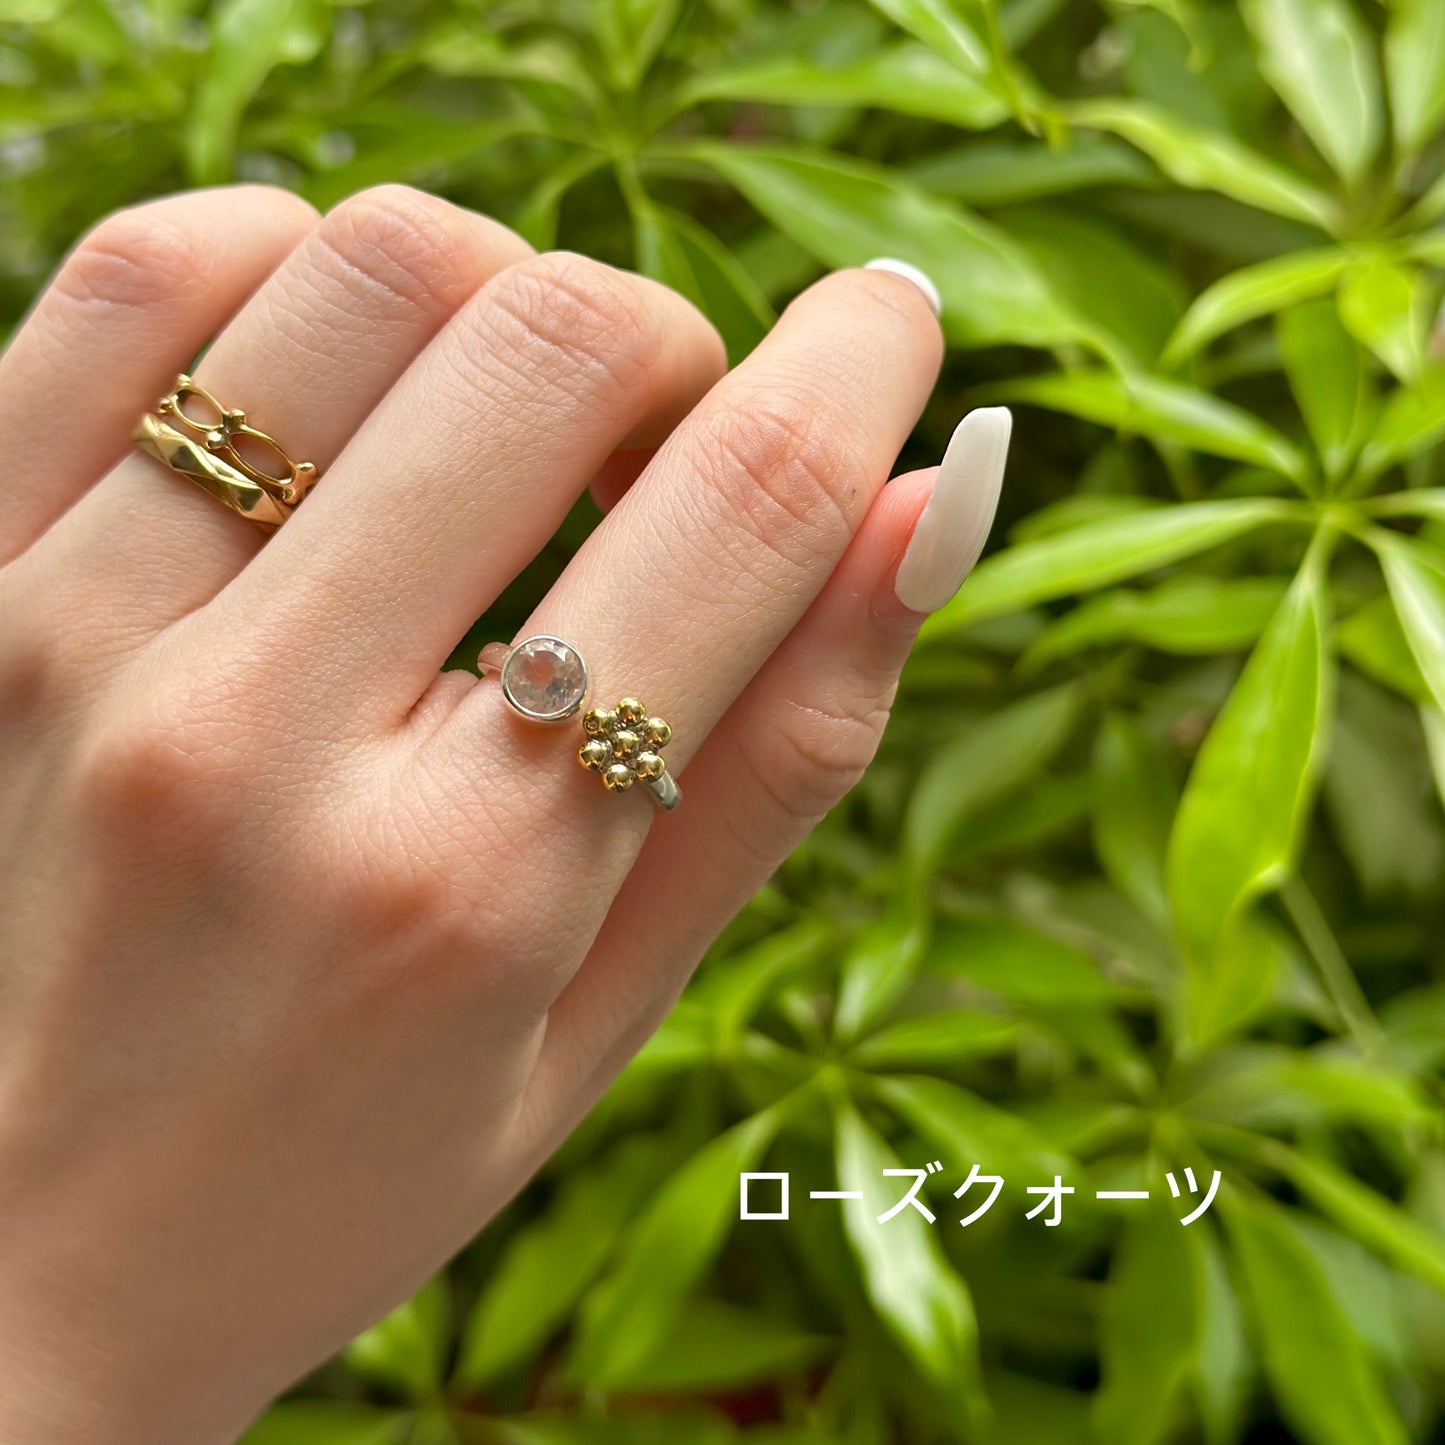 Flower design ring 1